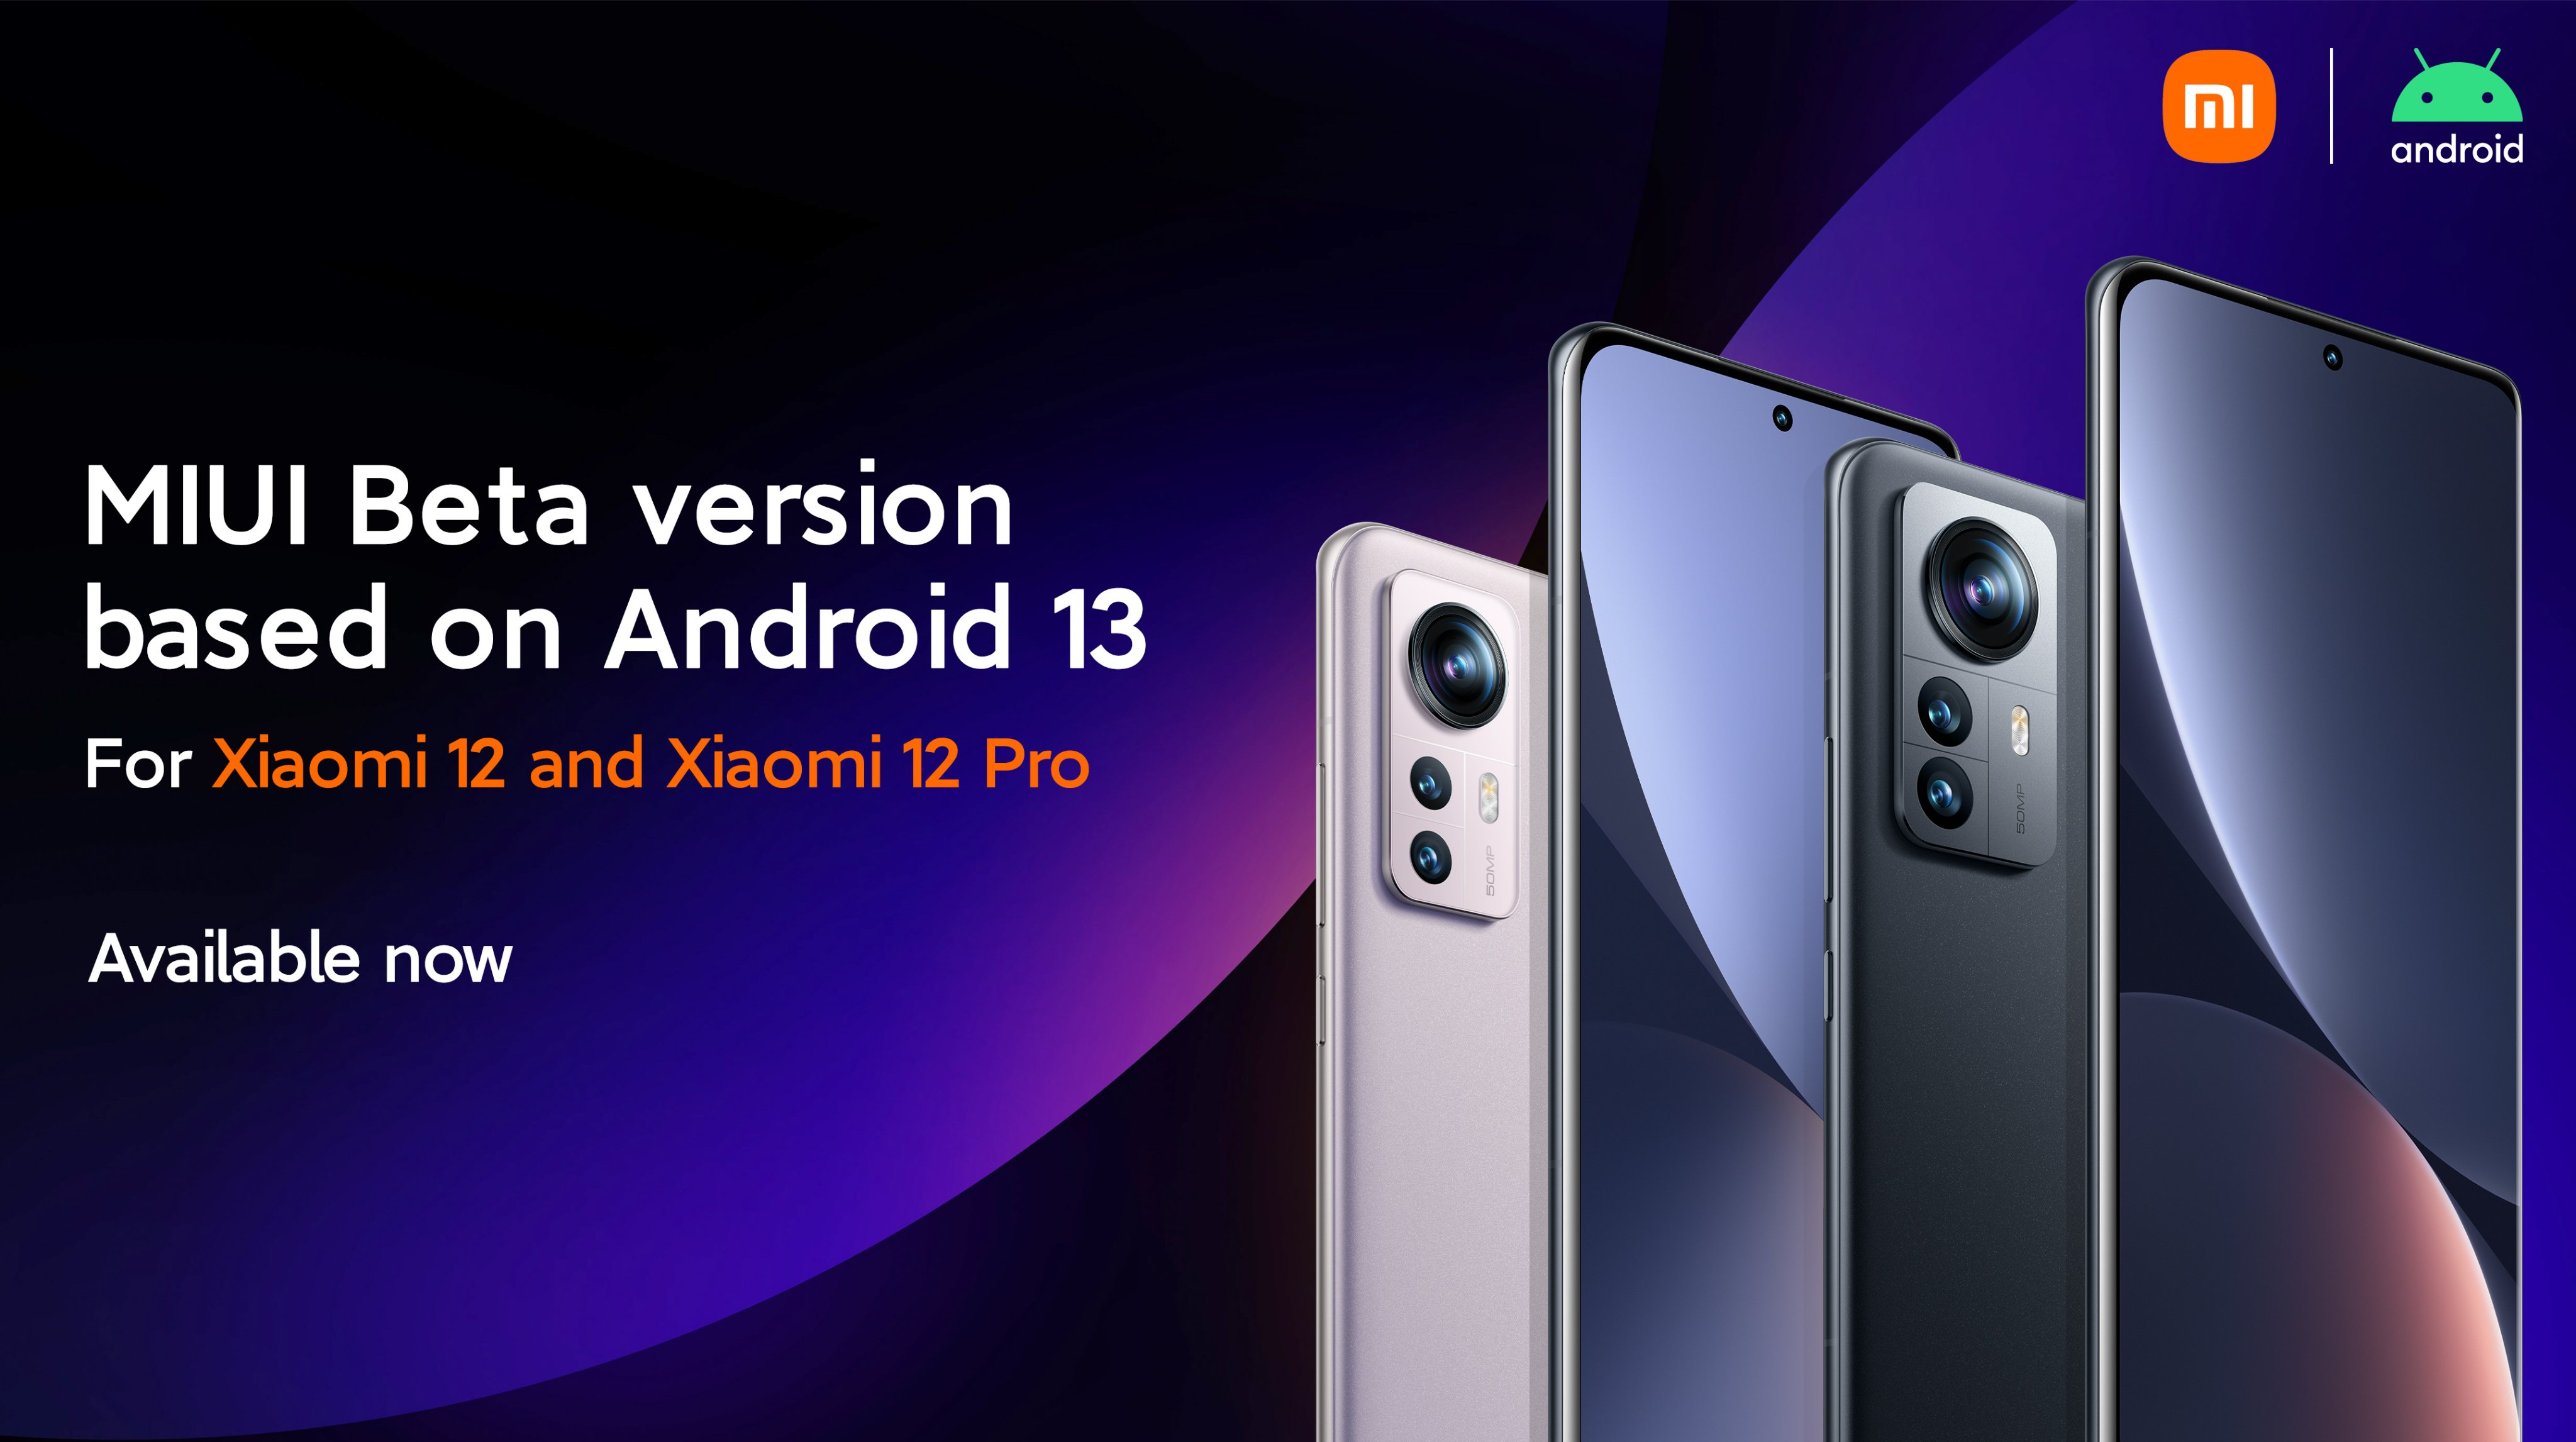 Xiaomi 12 und Xiaomi 12 Pro haben eine Beta-Version von MIUI 13 basierend auf Android 13 erhalten